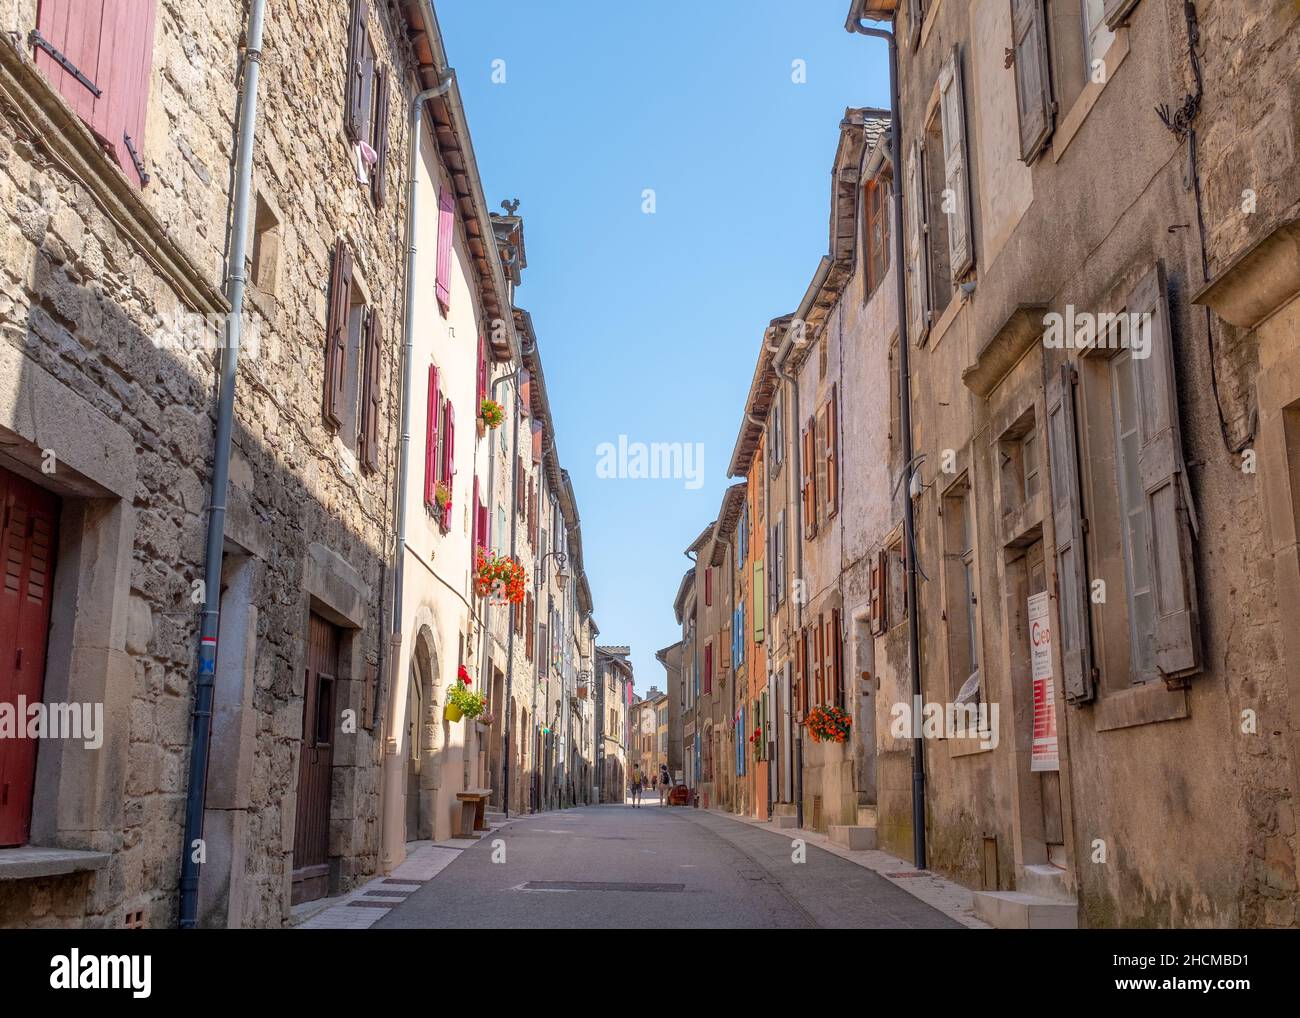 Barre-des-Cévennes, France - 14 août 2021 : perspective de la rue principale d'une petite ville du sud de la France dans les Cévennes, prise pendant un été ensoleillé Banque D'Images